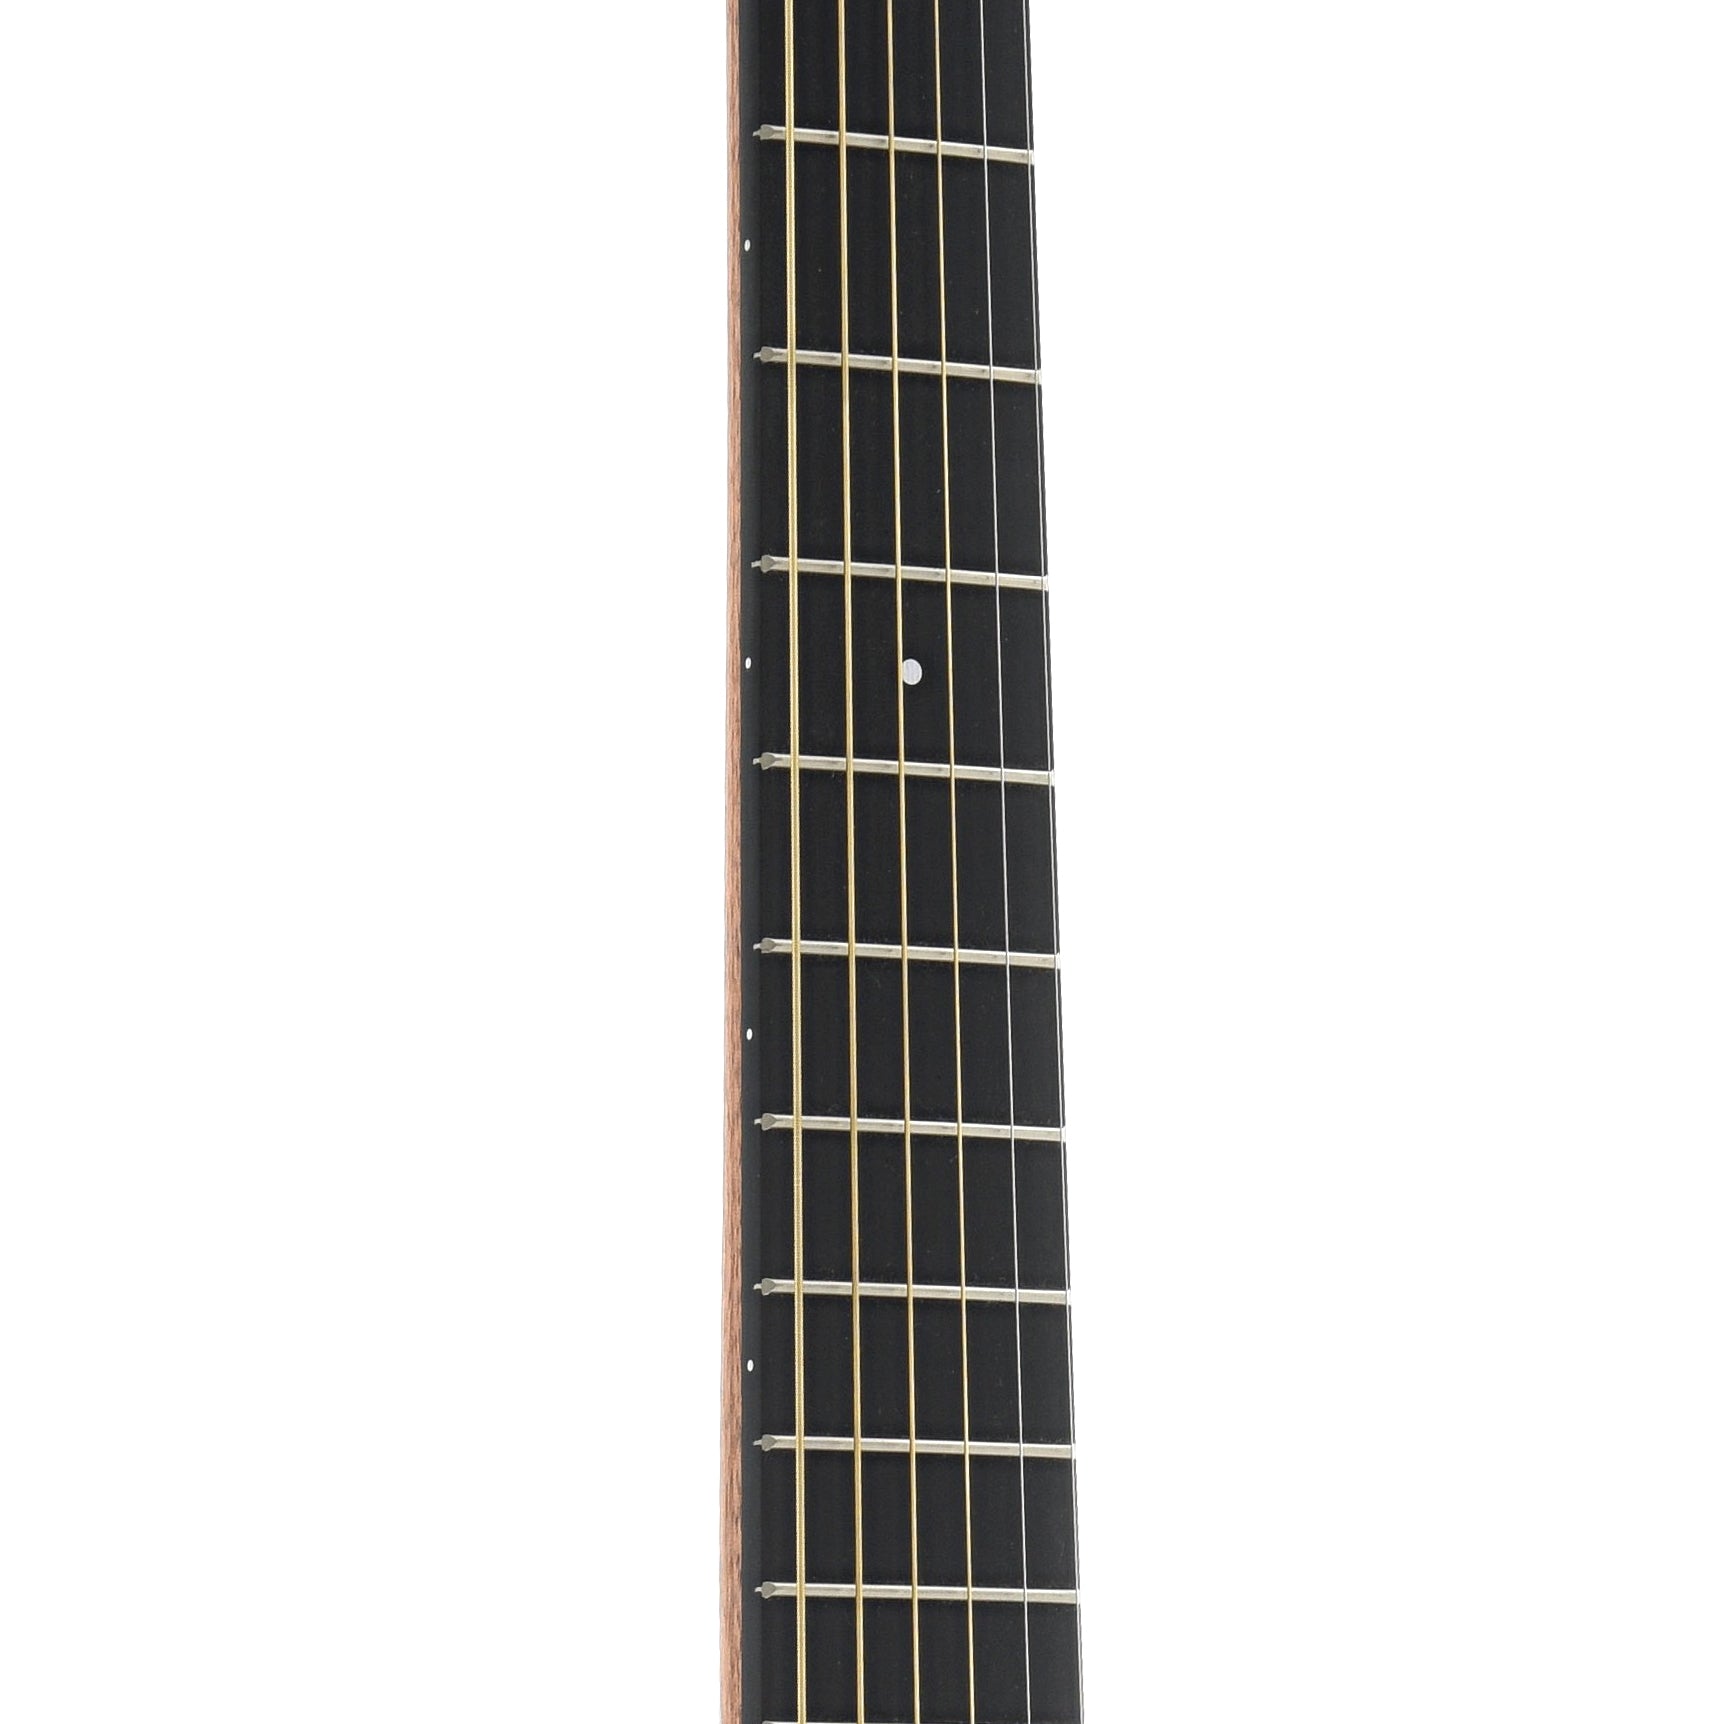 Fretboard of Martin Backpacker Steelstring Guitar